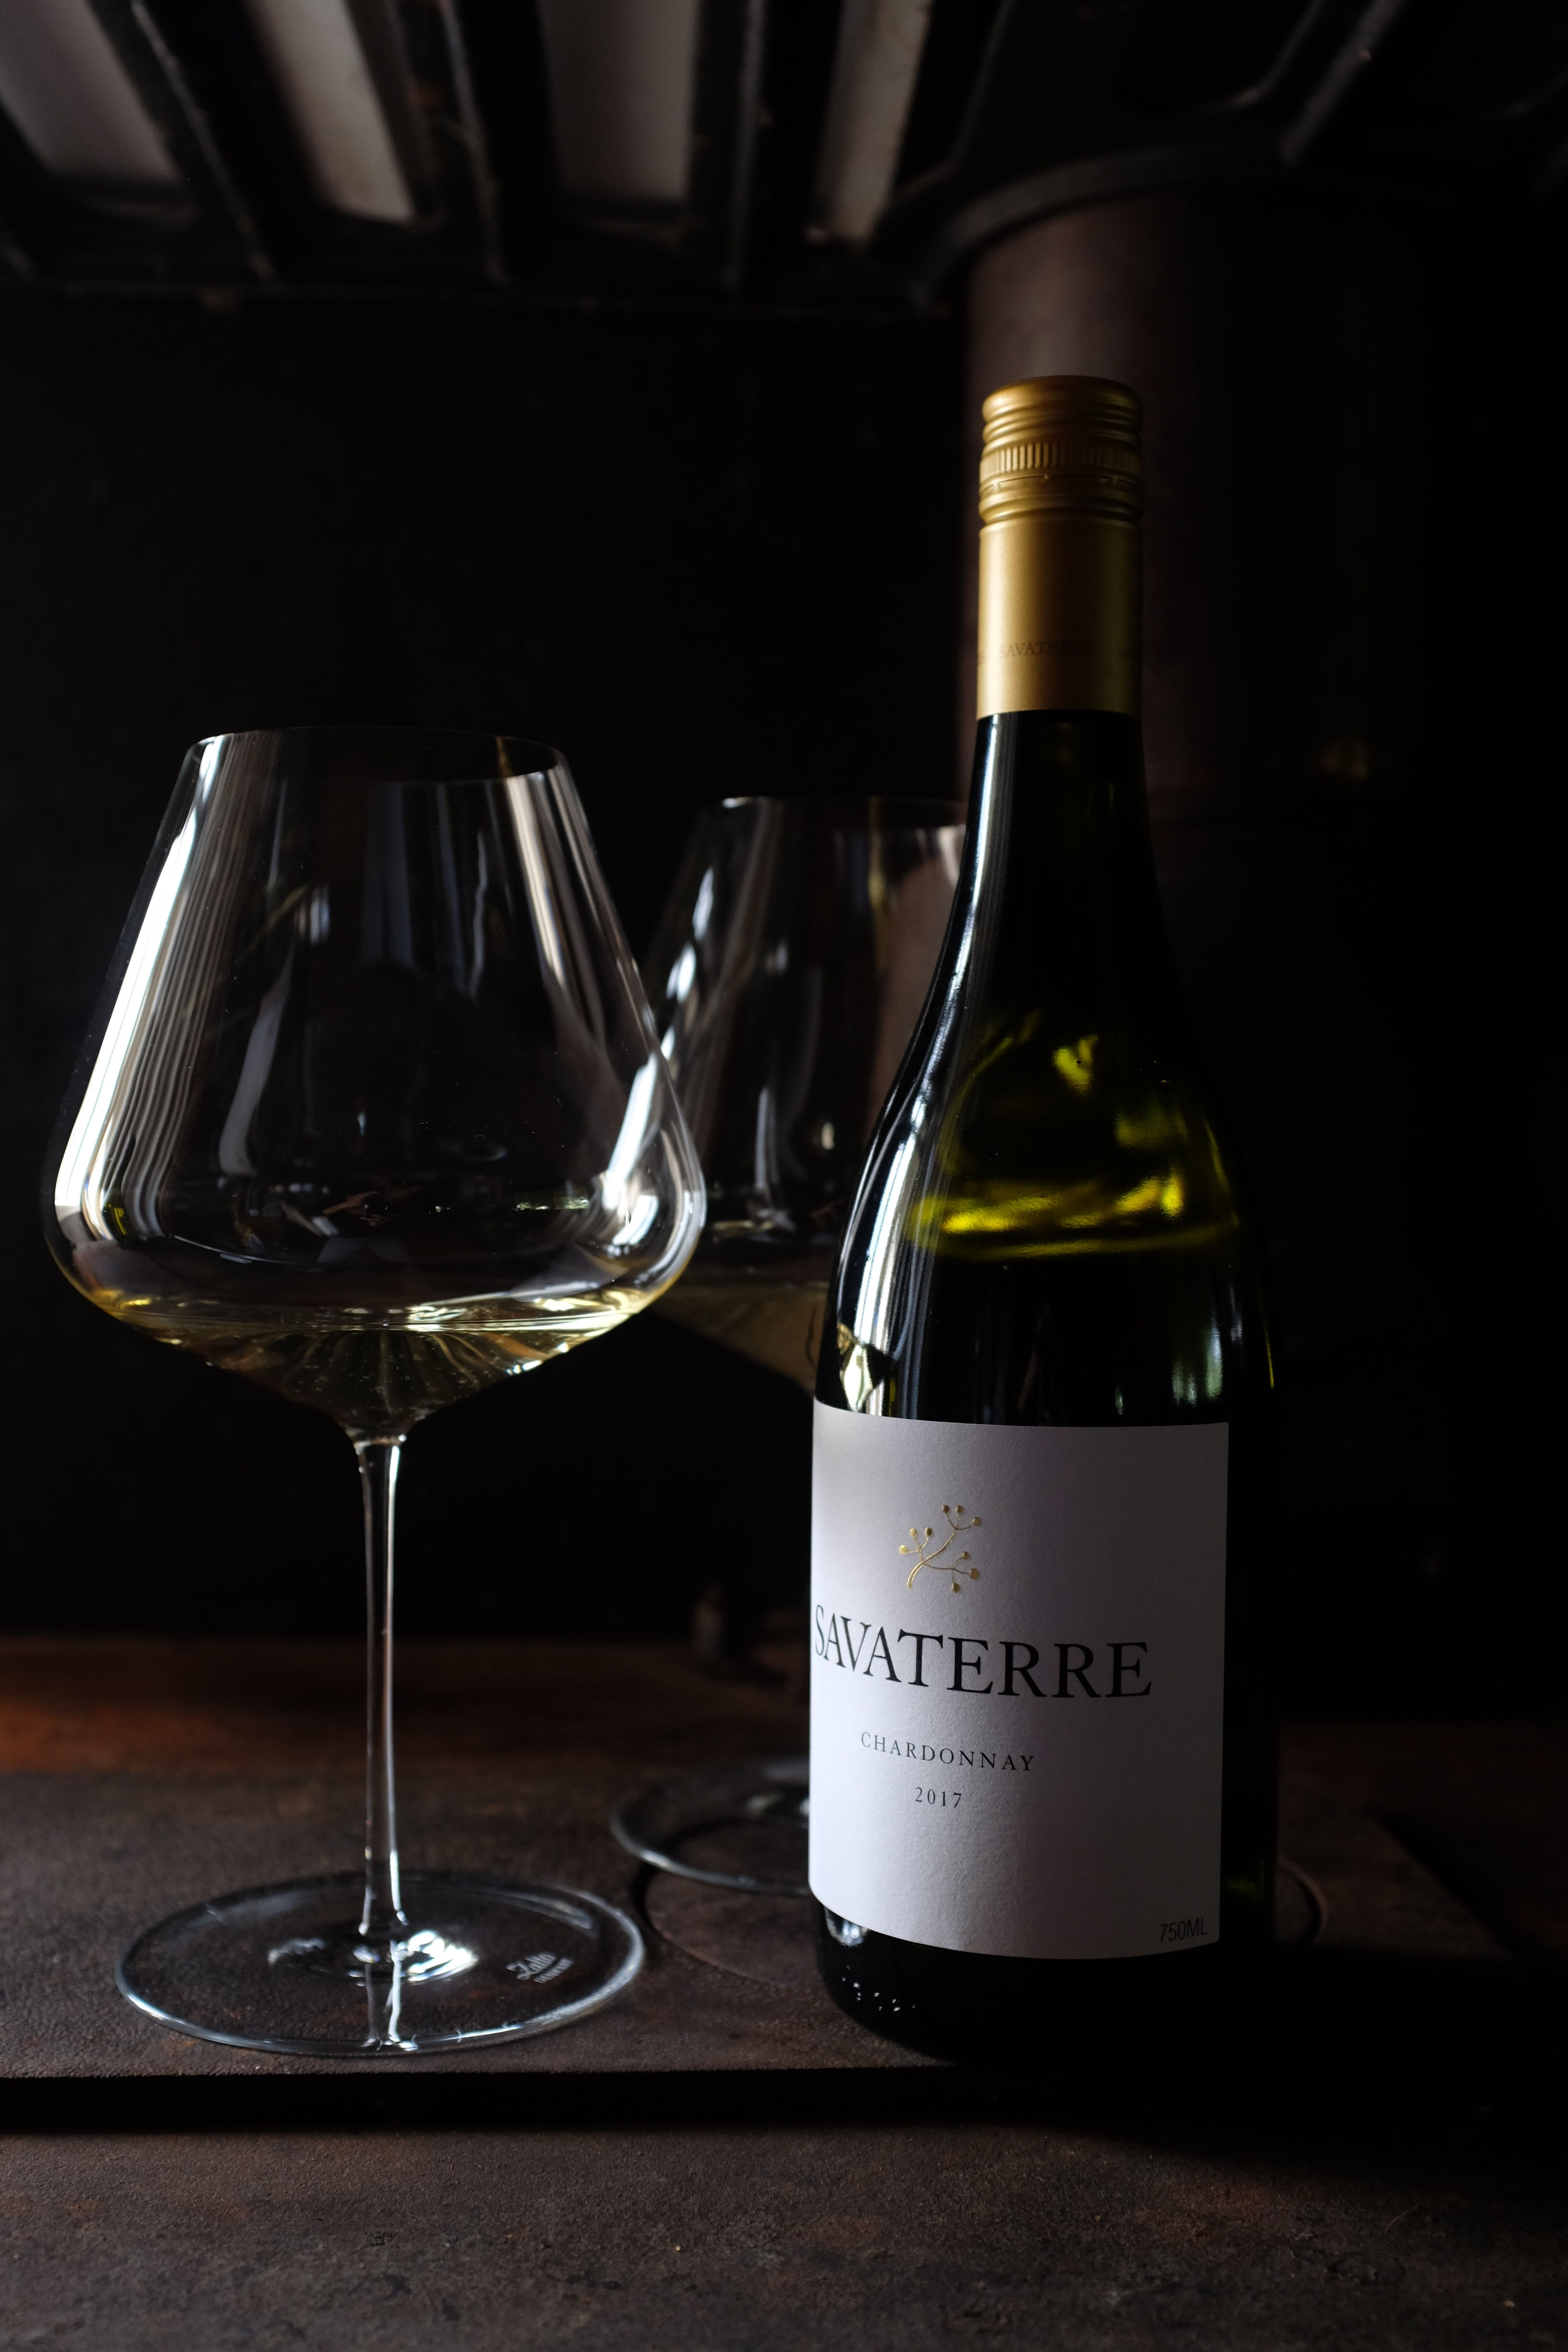 Savaterre Chardonnay - Vintage 2021